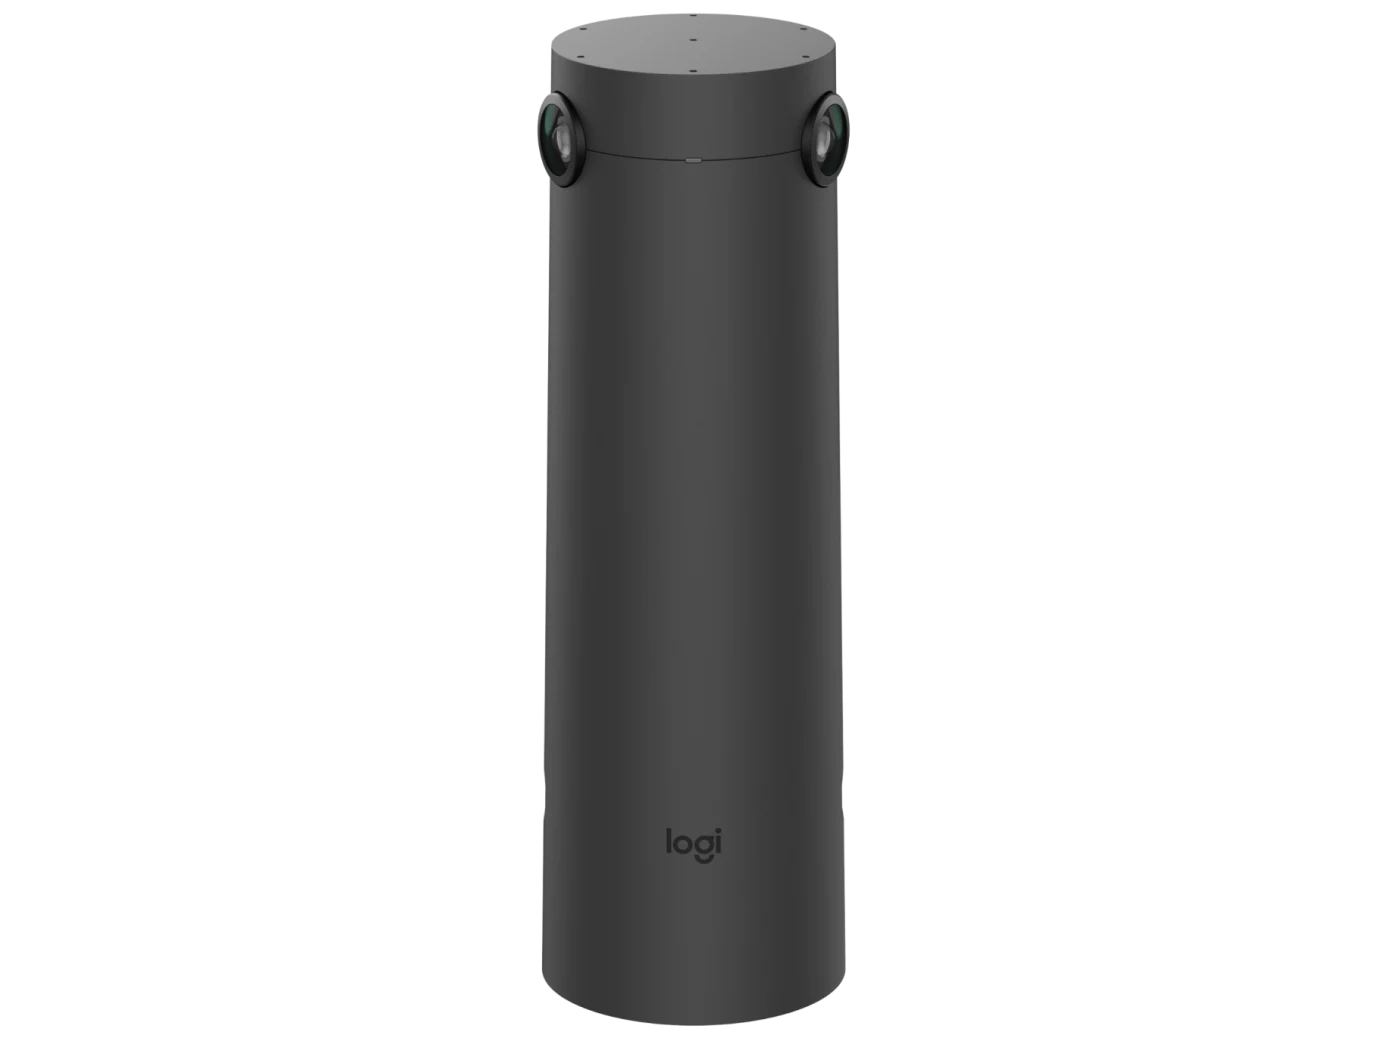 Logitech Sight 4K Tischkamera mit 7 Beamforming-Mikrofonen für ein besseres hybrides Meeting-Erlebnis